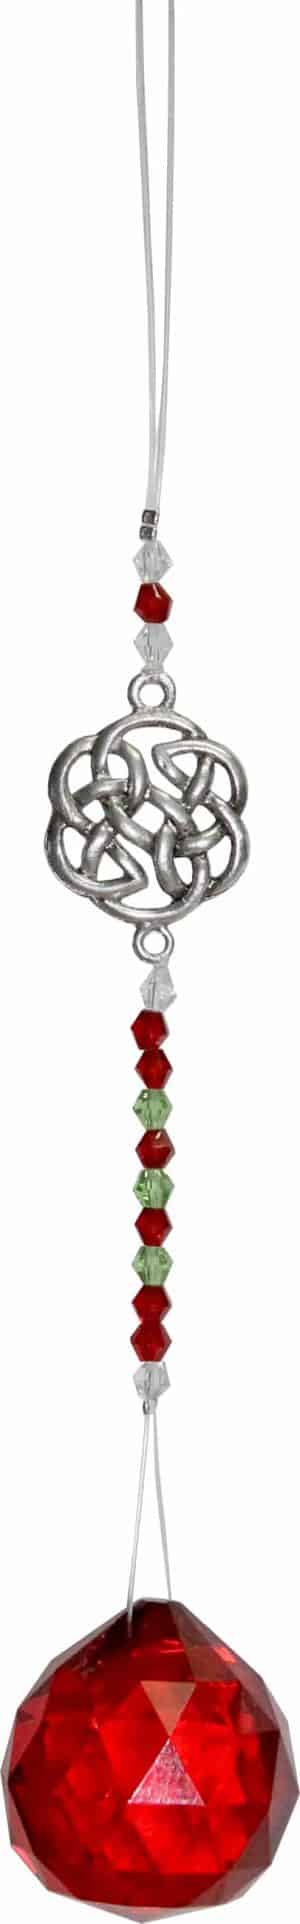 Hangend Kristal Geslepen Glas met Kralen & Keltische Knoop - Rood